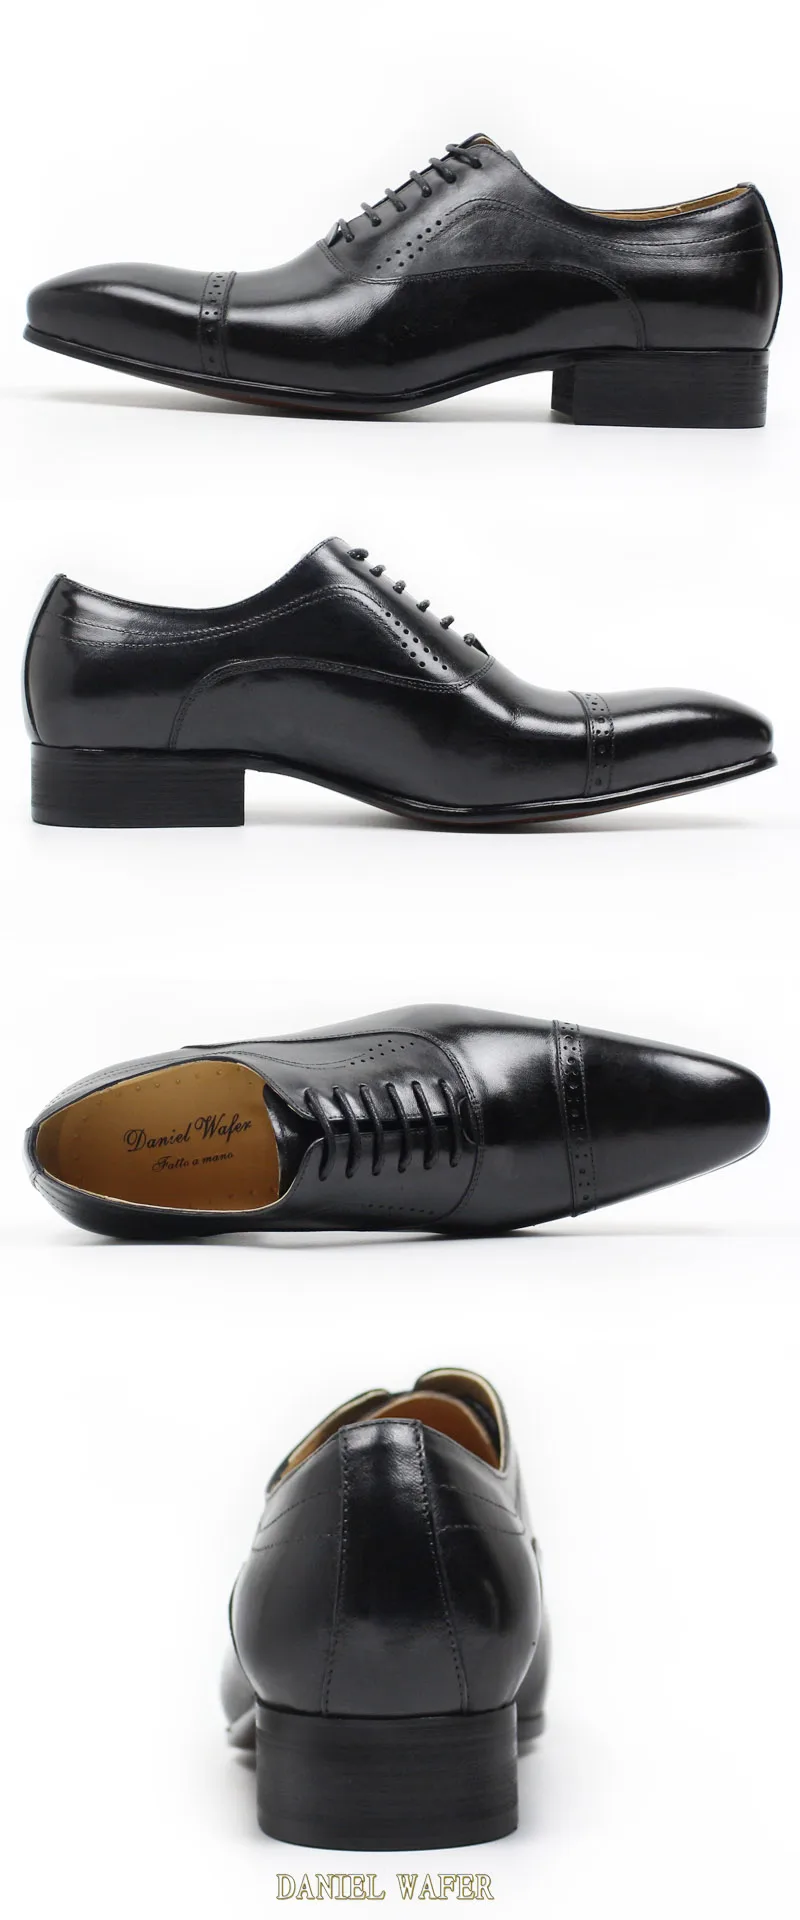 Классические мужские кожаные туфли; Цвет черный, кофейный; обувь с острым носком на шнуровке; обувь с перфорацией типа «броги»; деловая Свадебная обувь; мужские оксфорды